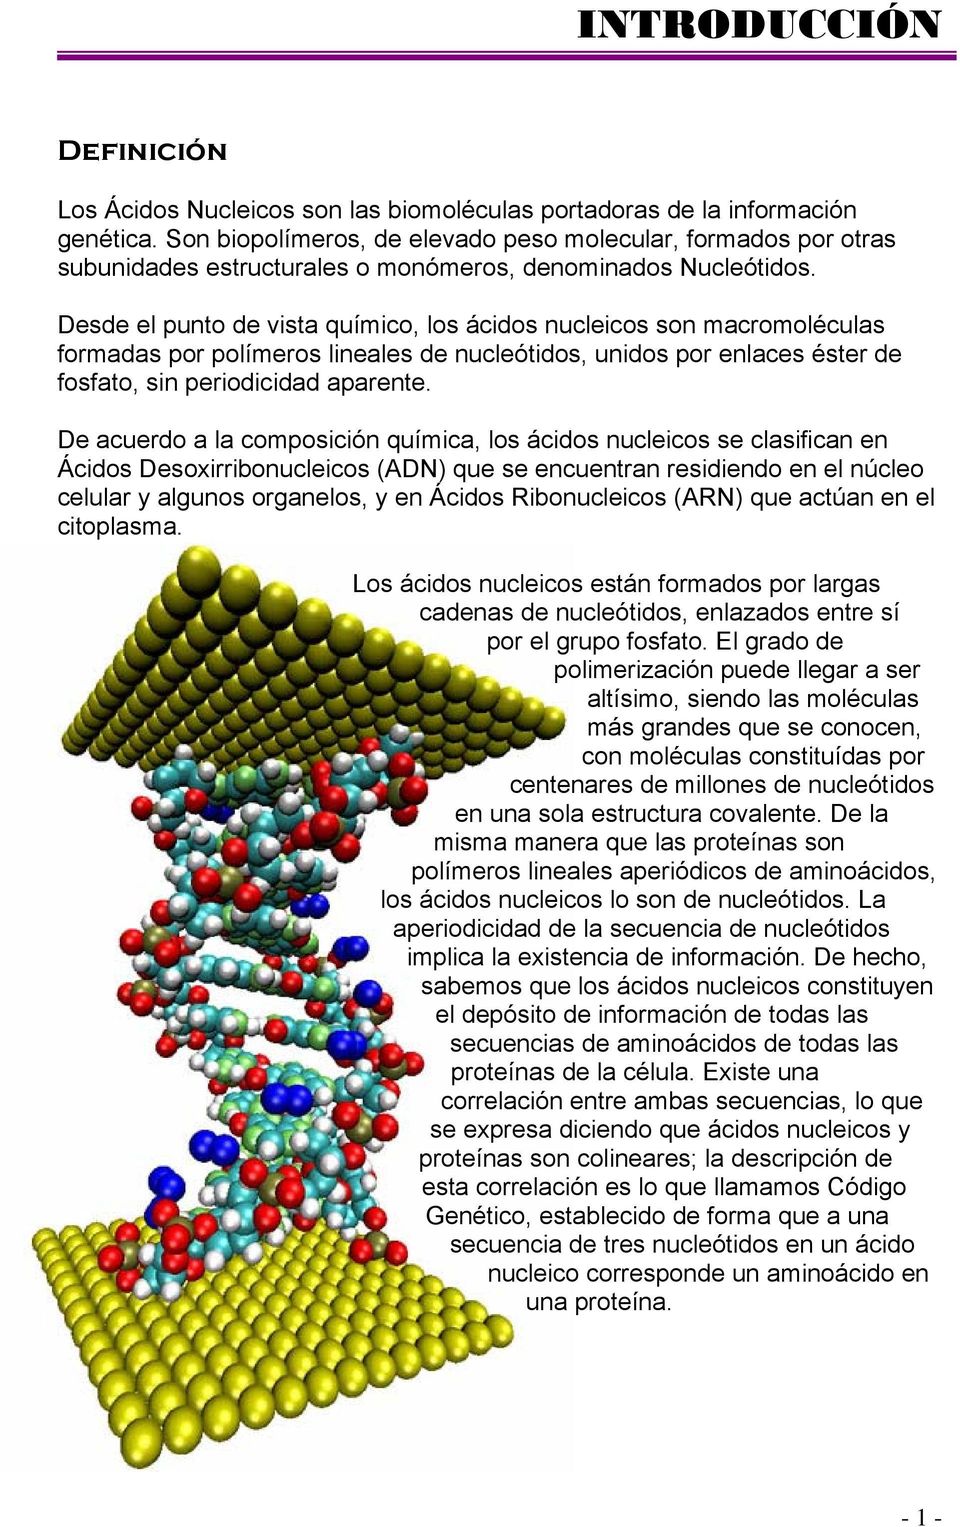 Desde el punto de vista químico, los ácidos nucleicos son macromoléculas formadas por polímeros lineales de nucleótidos, unidos por enlaces éster de fosfato, sin periodicidad aparente.